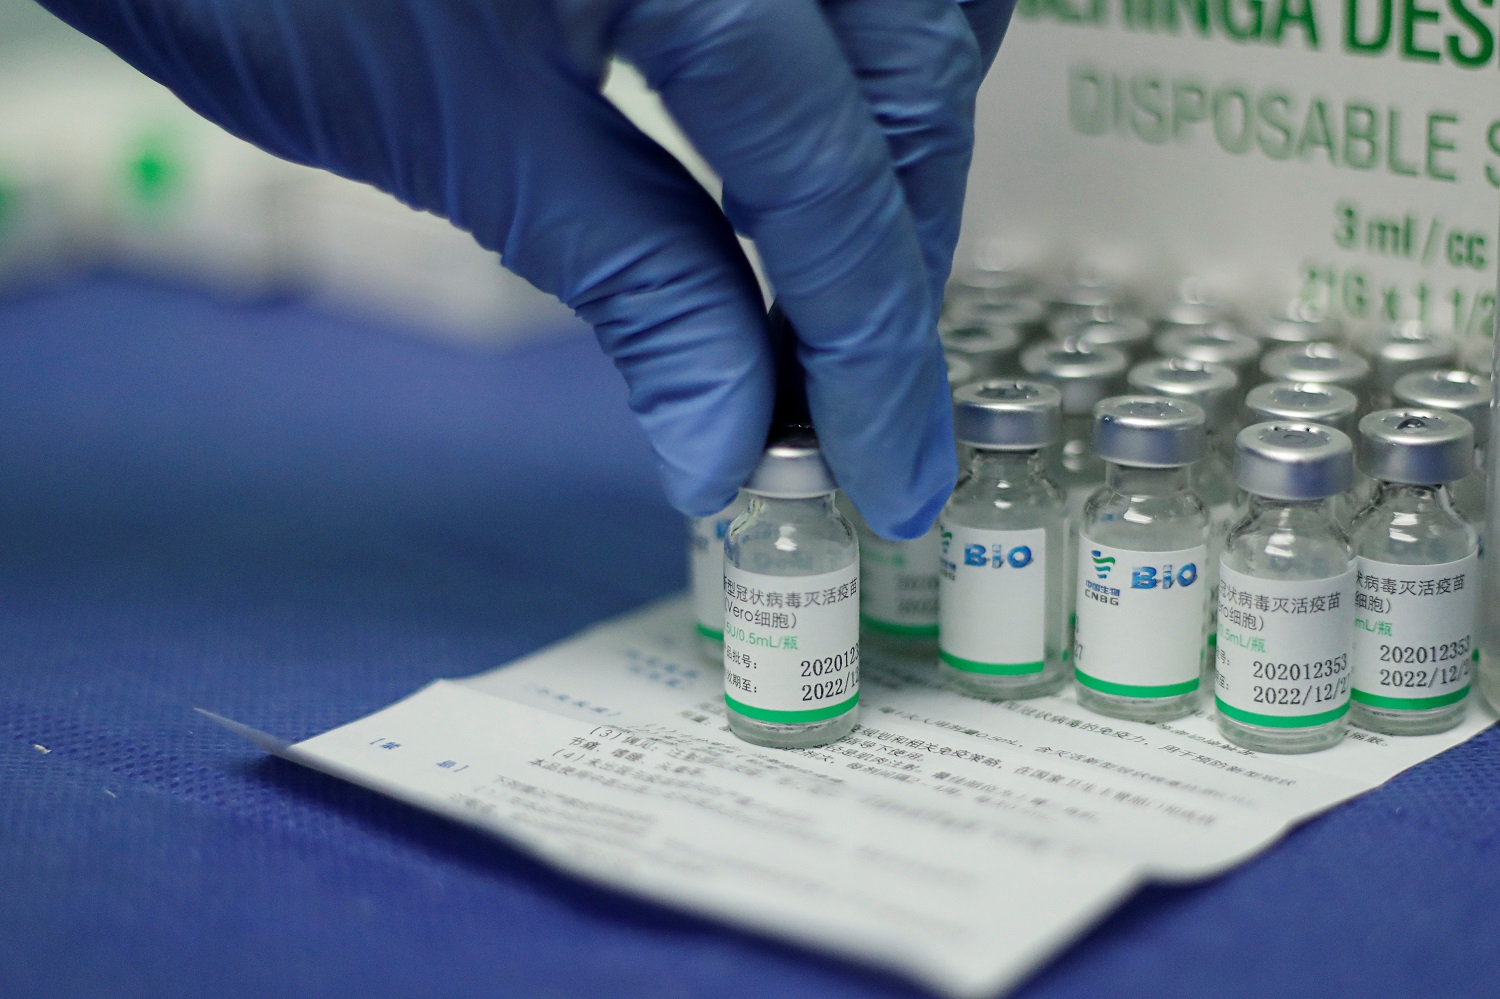 Los expertos de la OMS expresan “muy poca confianza” en algunos datos de la vacuna de Sinopharm